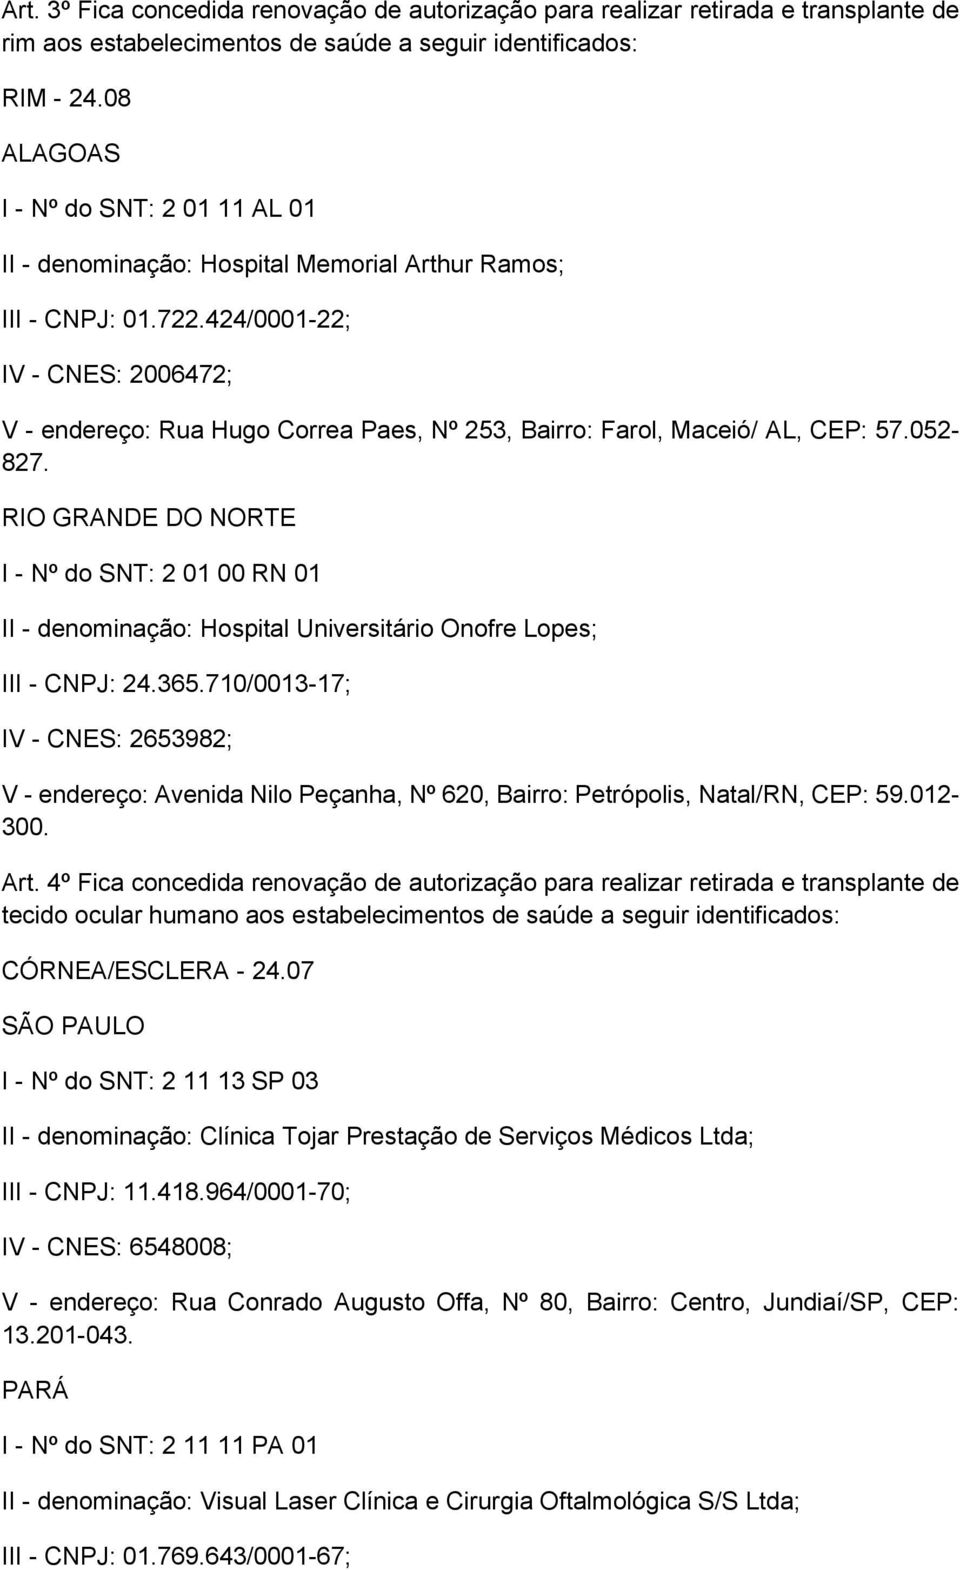 424/0001-22; IV - CNES: 2006472; V - endereço: Rua Hugo Correa Paes, Nº 253, Bairro: Farol, Maceió/ AL, CEP: 57.052-827.